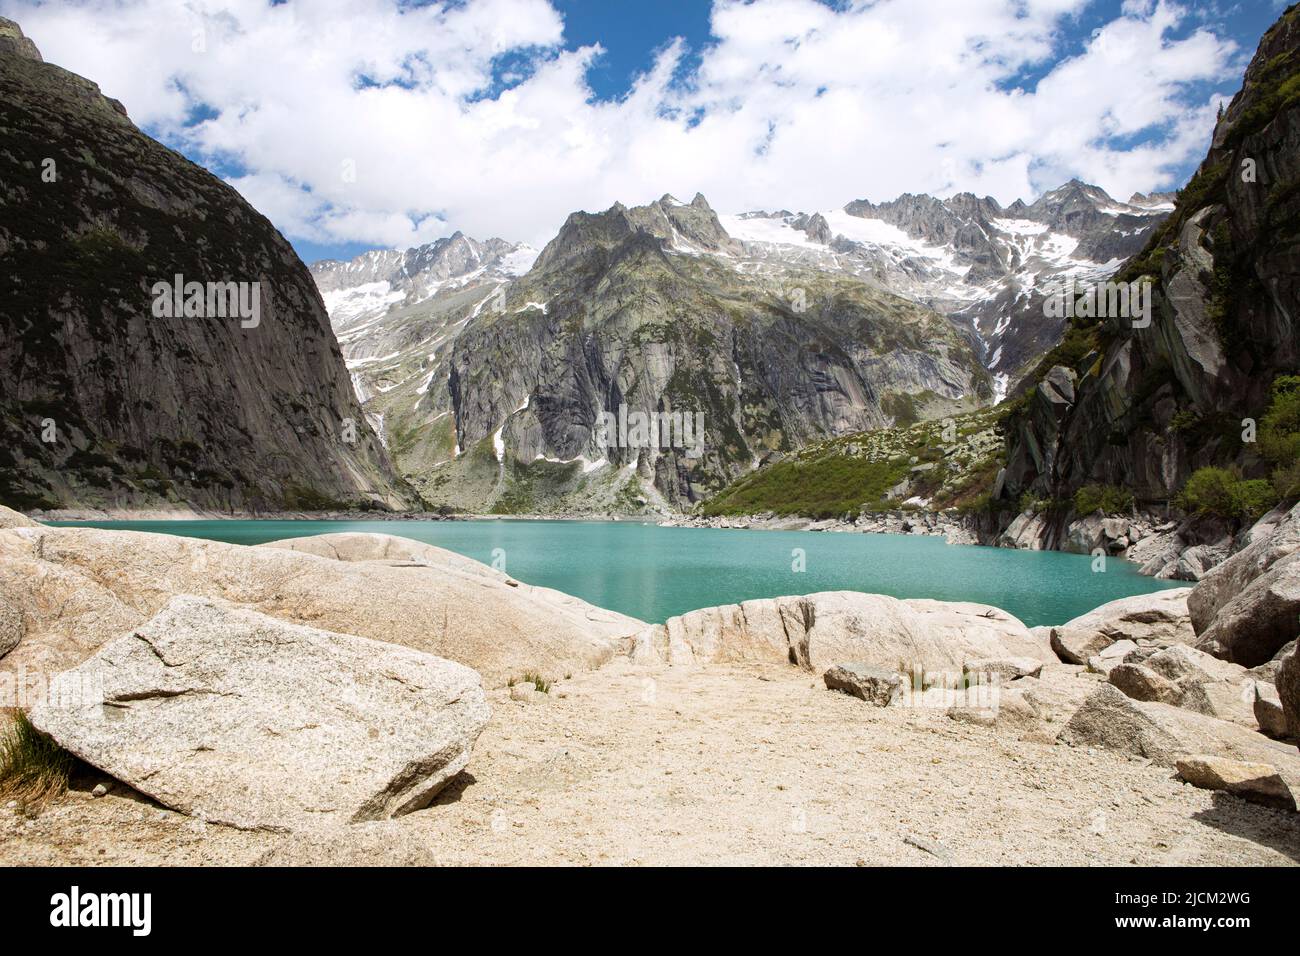 Alpes montagnes magnifique paysage avec eau turquoise lac. Hautes montagnes partiellement ombre. Nature pittoresque du réservoir du lac Gelmer, jour d'été ensoleillé. Banque D'Images